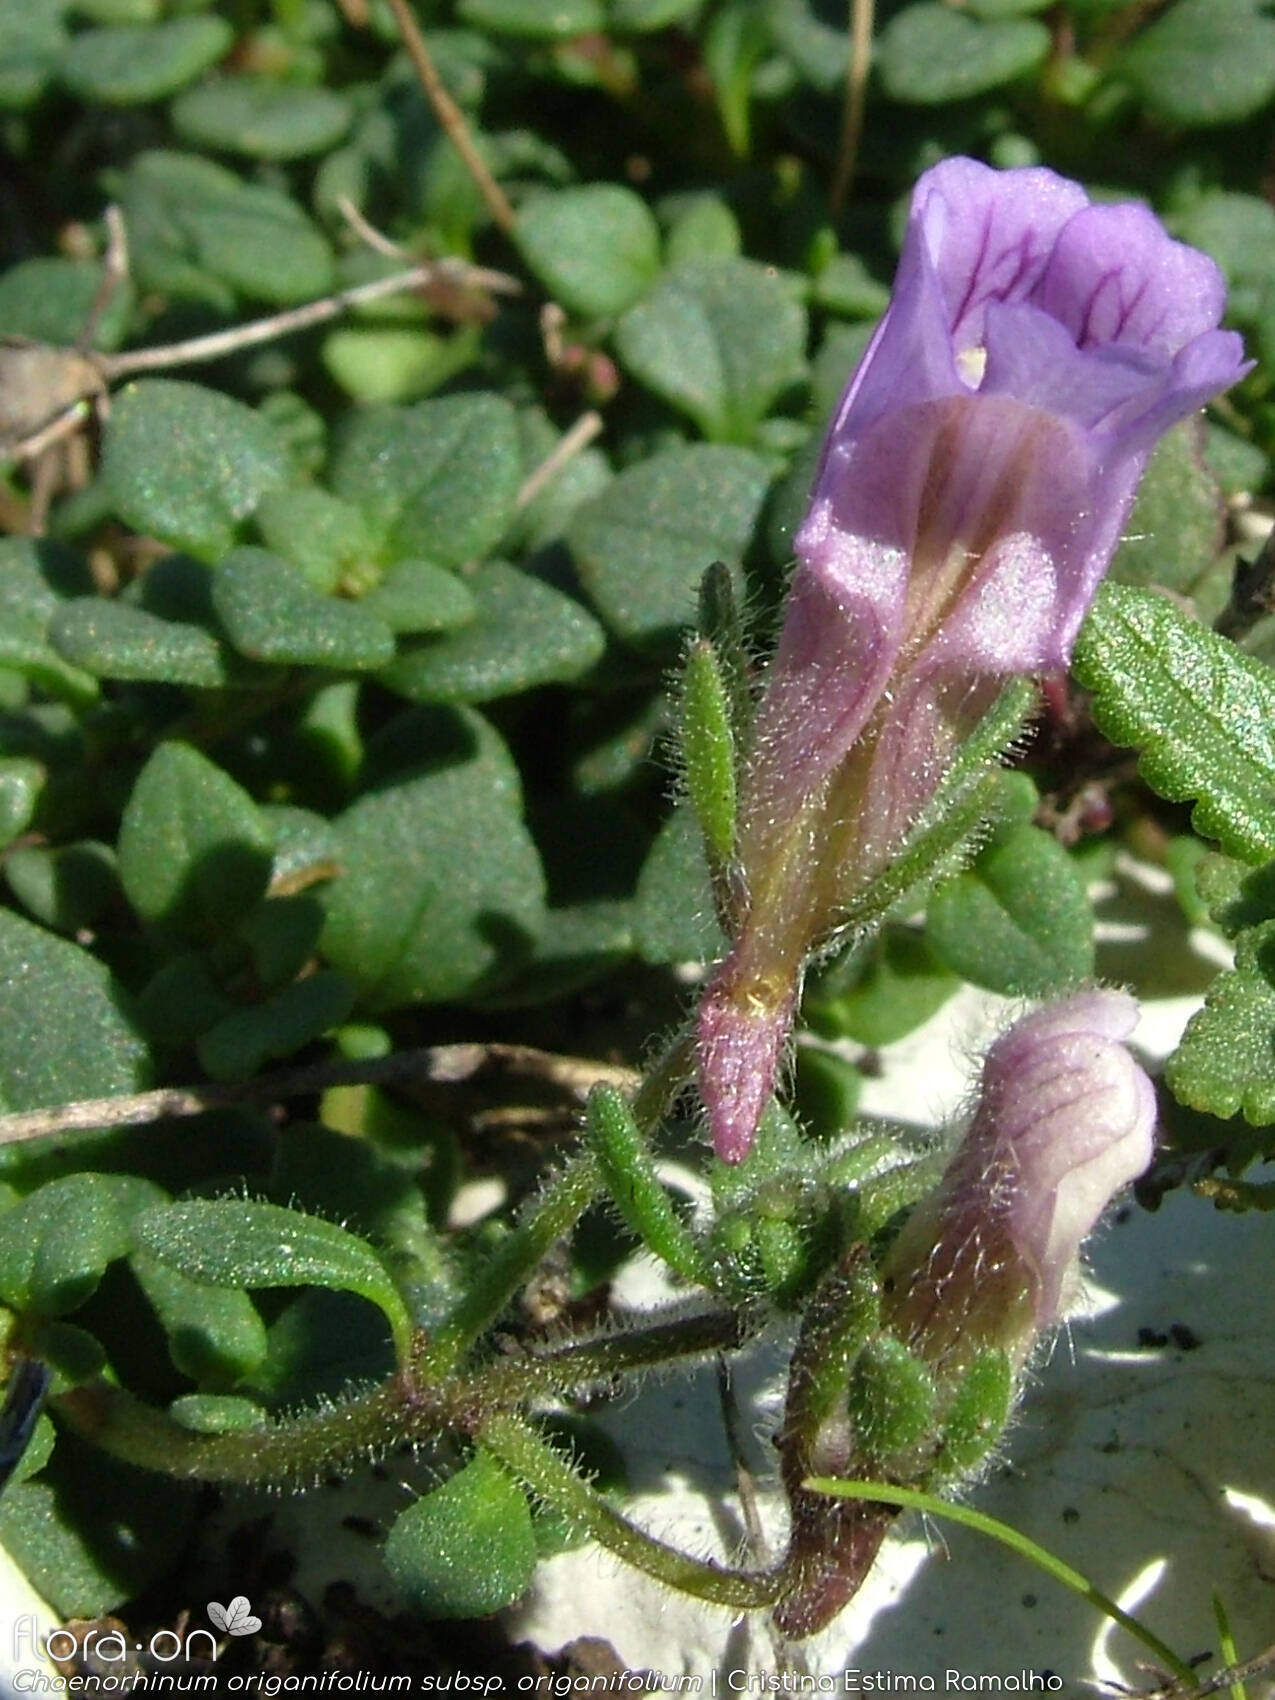 Chaenorhinum origanifolium origanifolium - Flor (geral) | Cristina Estima Ramalho; CC BY-NC 4.0